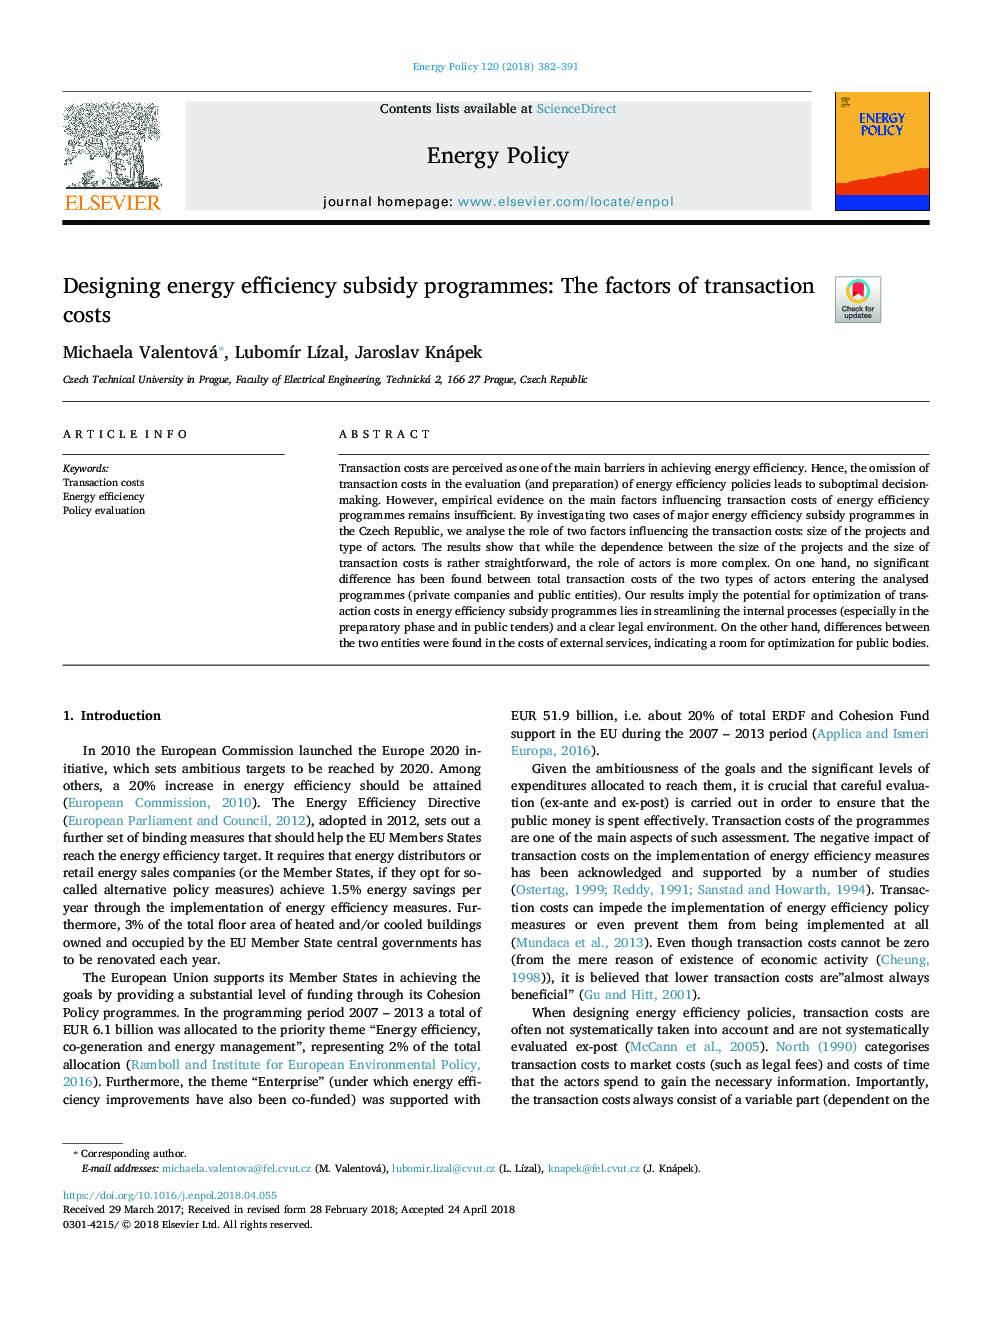 طراحی برنامه های بهره وری بهره وری انرژی: عوامل هزینه های معامله 